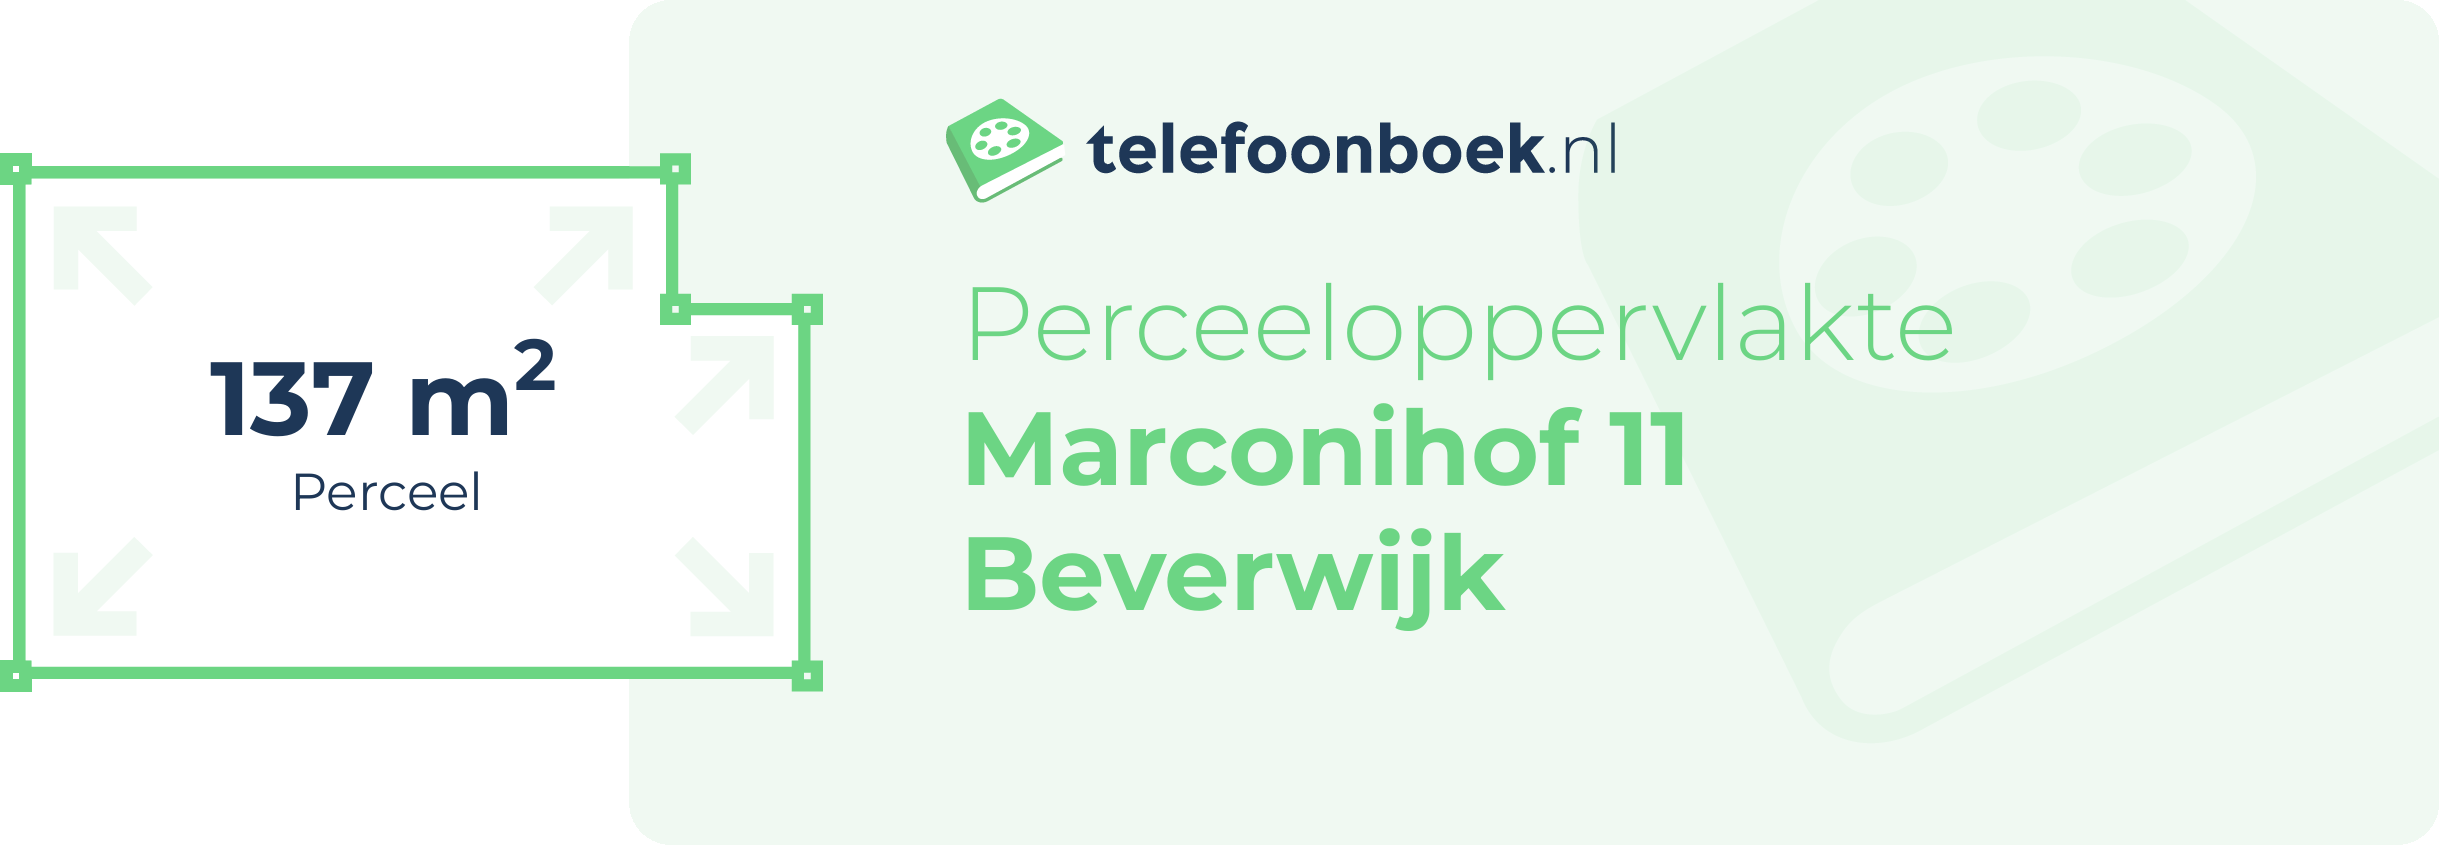 Perceeloppervlakte Marconihof 11 Beverwijk